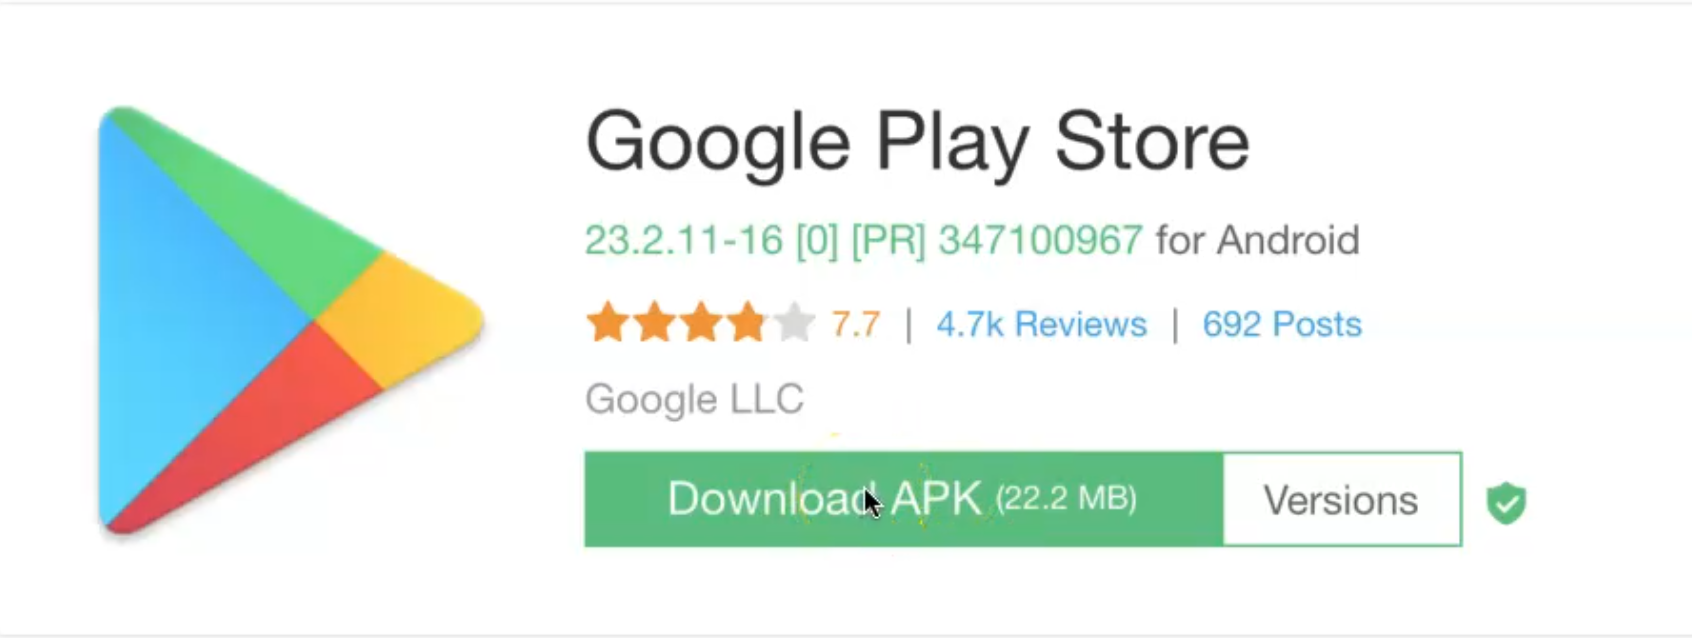 Google Play. Google Play Store. Google Play Маркет. Android Play Store. Google play отменили